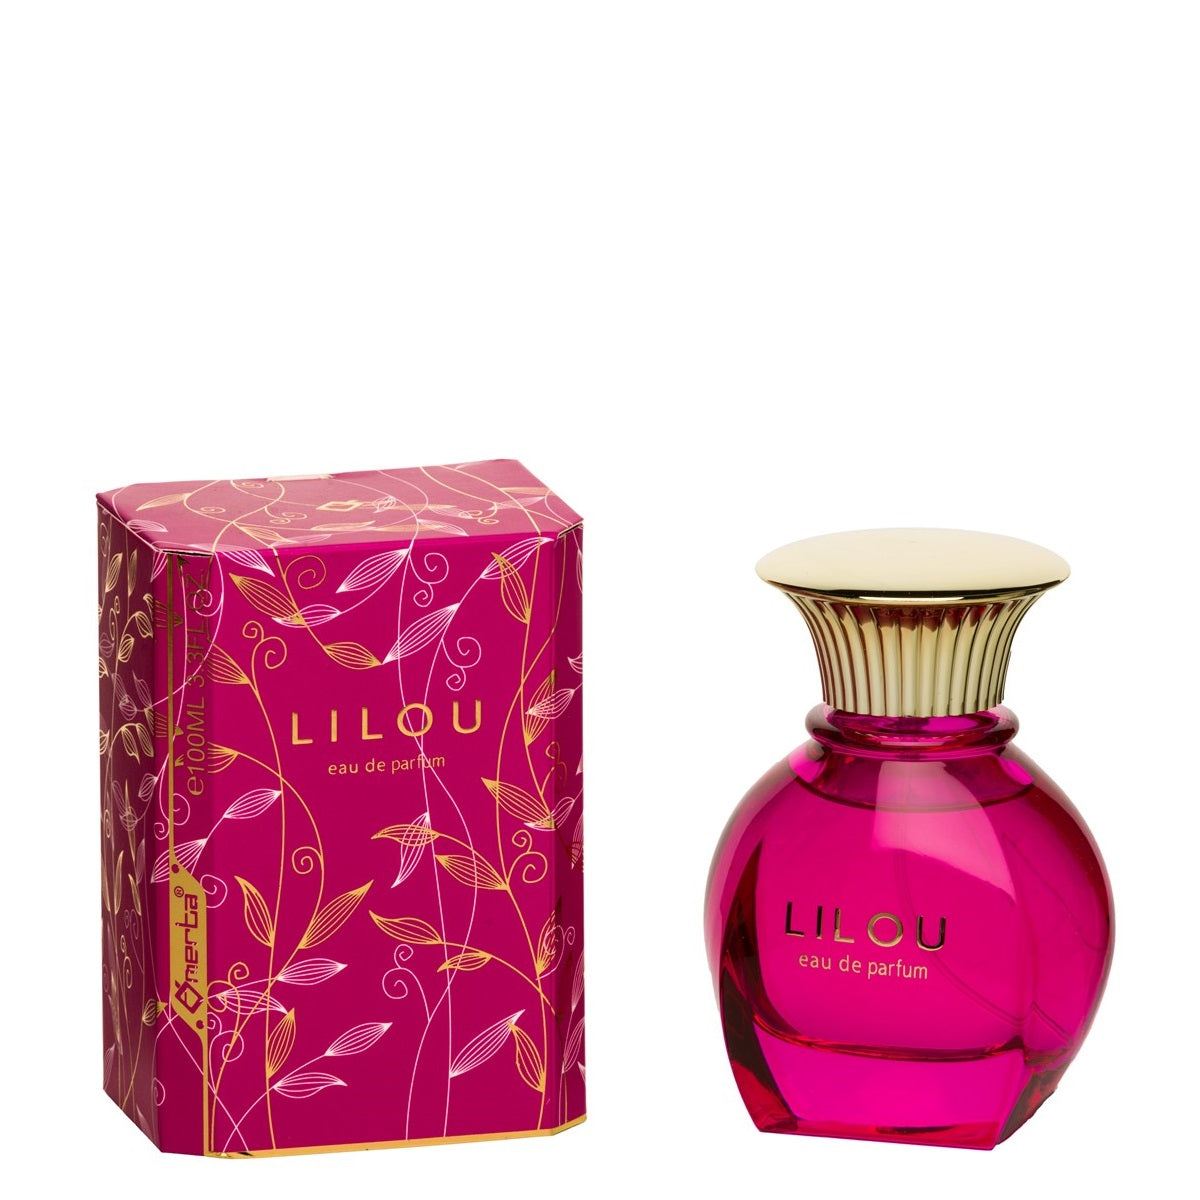 100 ml wody perfumowanej "LILOU" orientalno-drzewny zapach dla kobiet, o wysokiej zawartości olejków zapachowych 6%